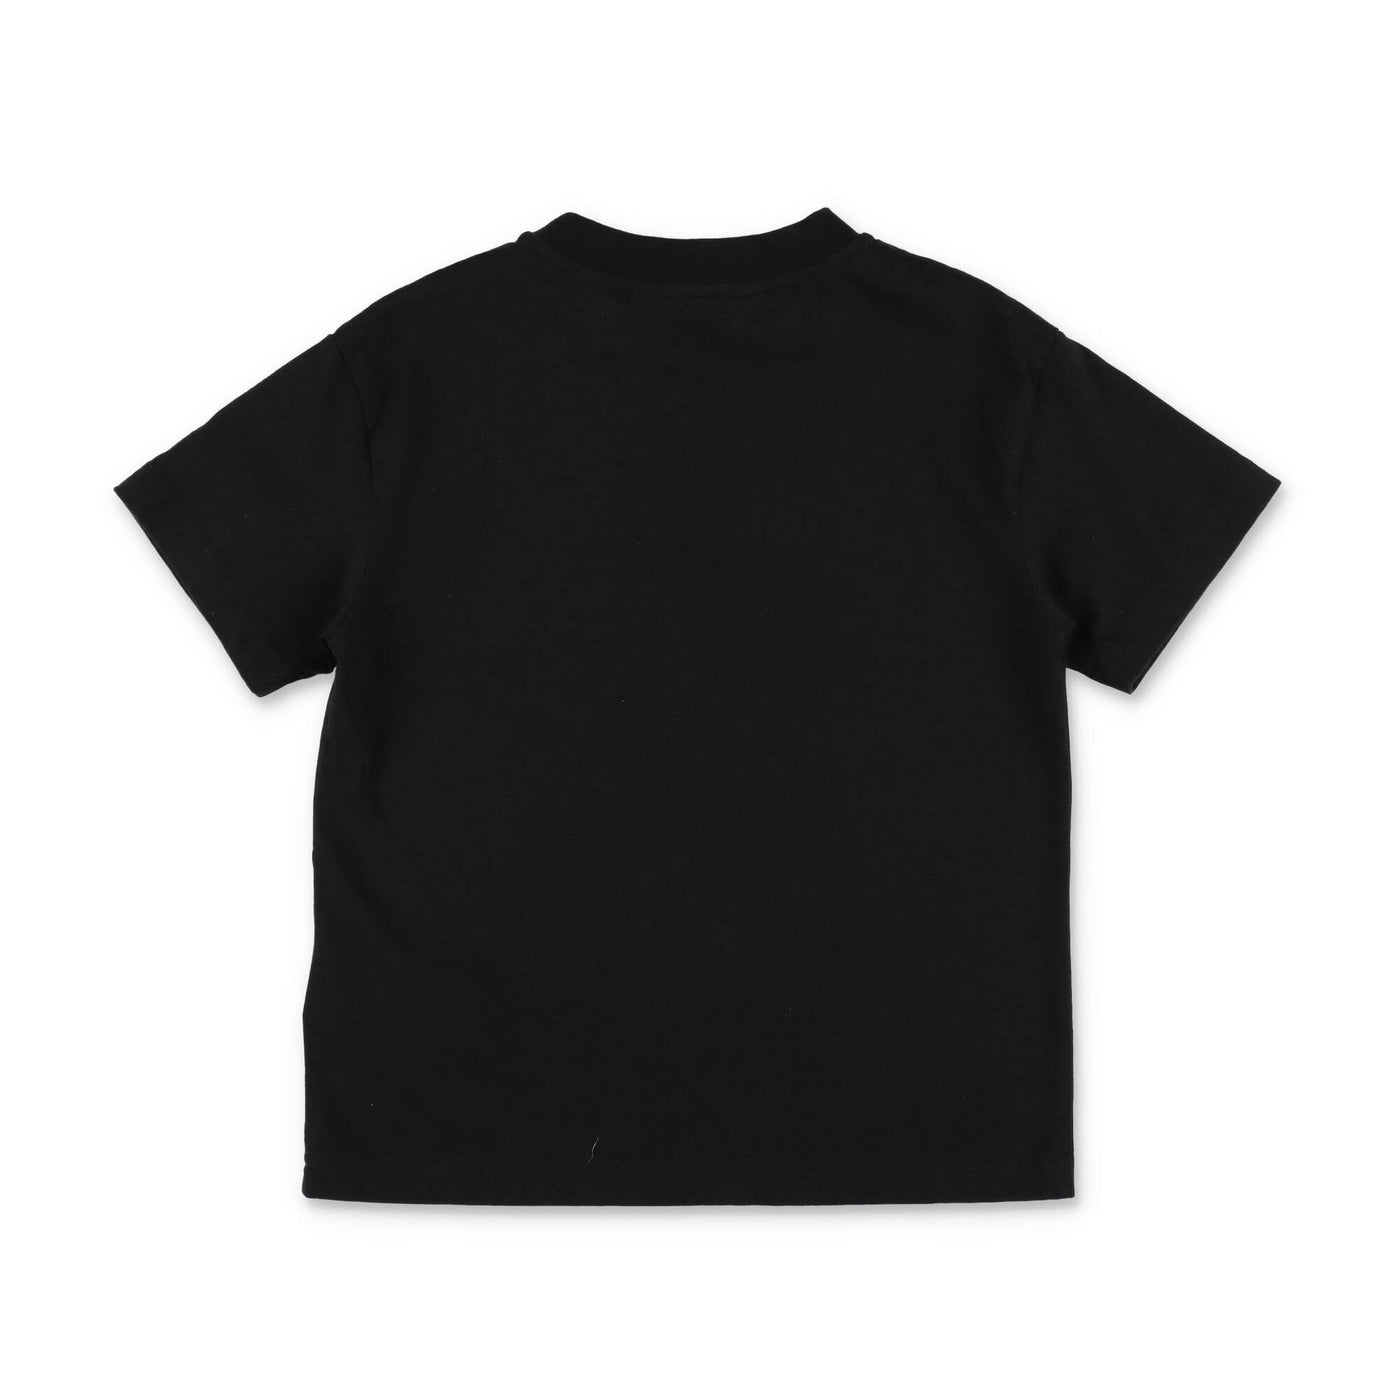 Black cotton jersey boy PALM ANGELS t-shirt | Carofiglio Junior